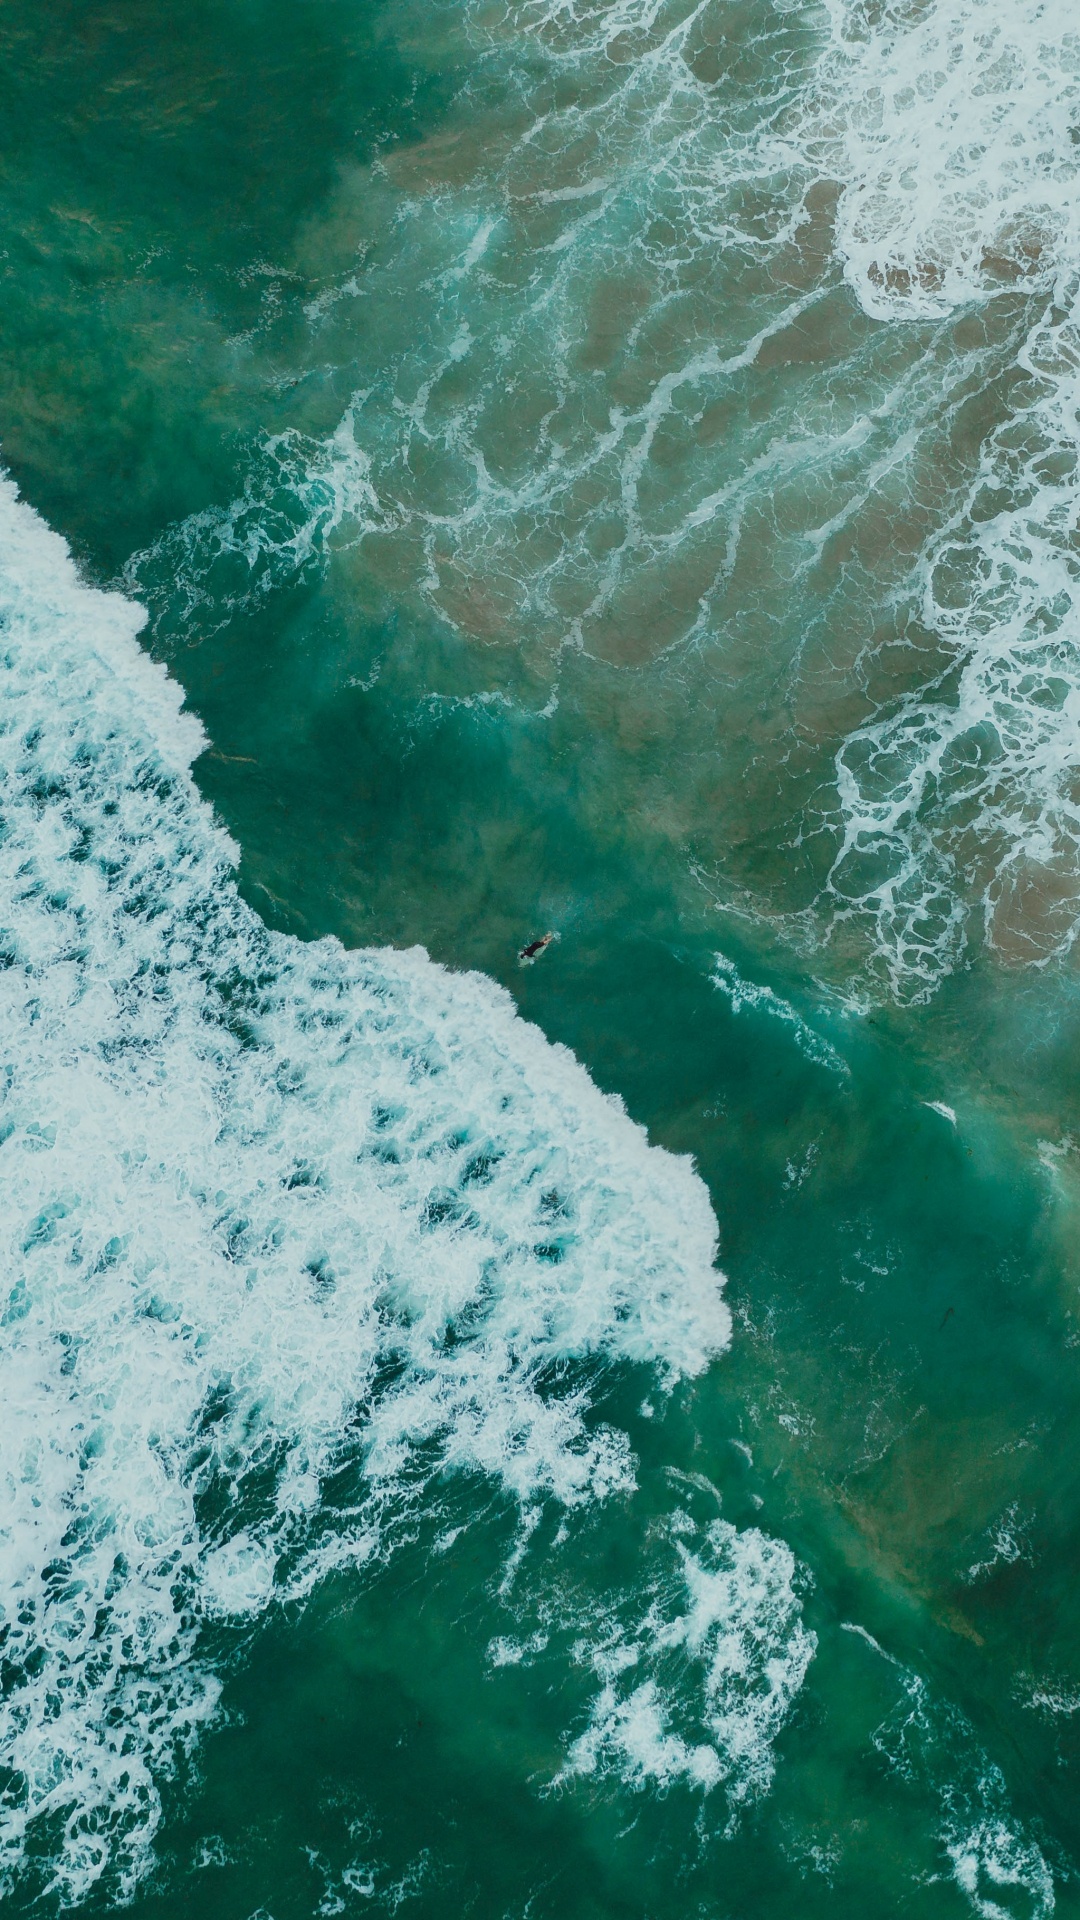 Ozean, Meer, Wind Welle, Wasser, Welle. Wallpaper in 1080x1920 Resolution